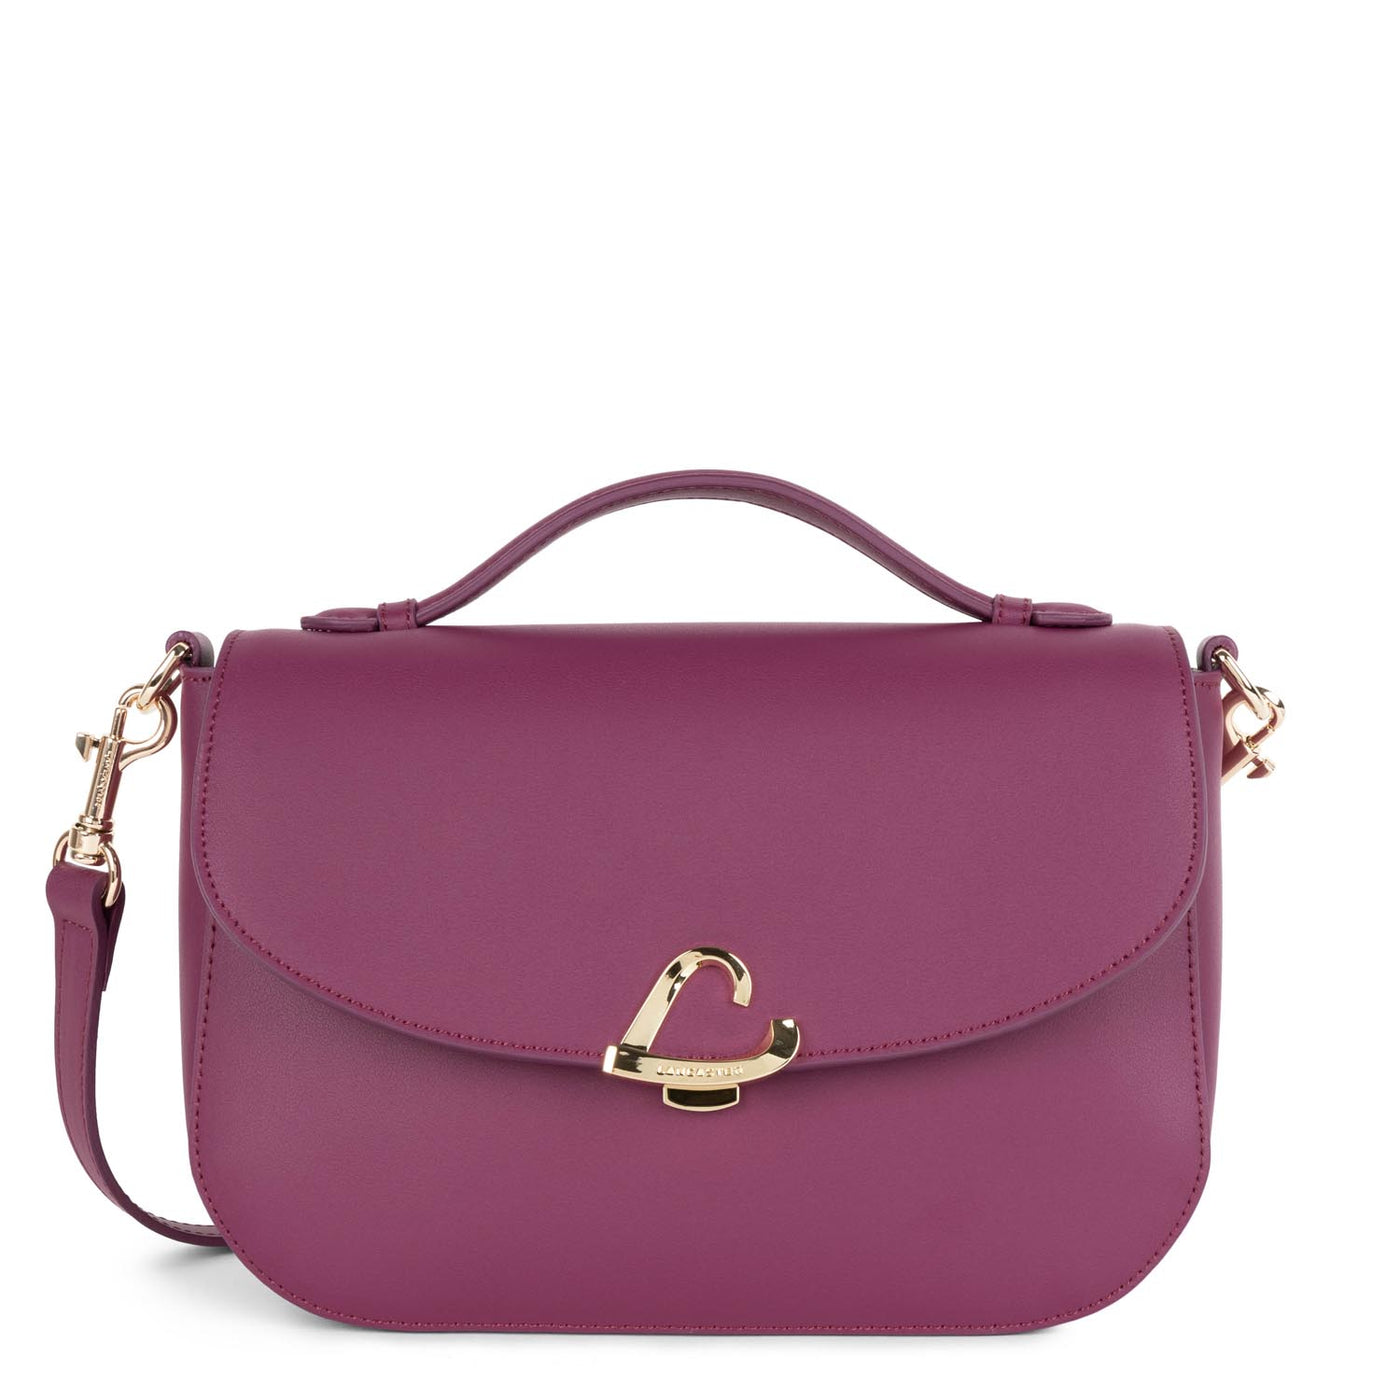 handbag - city philos #couleur_orchide